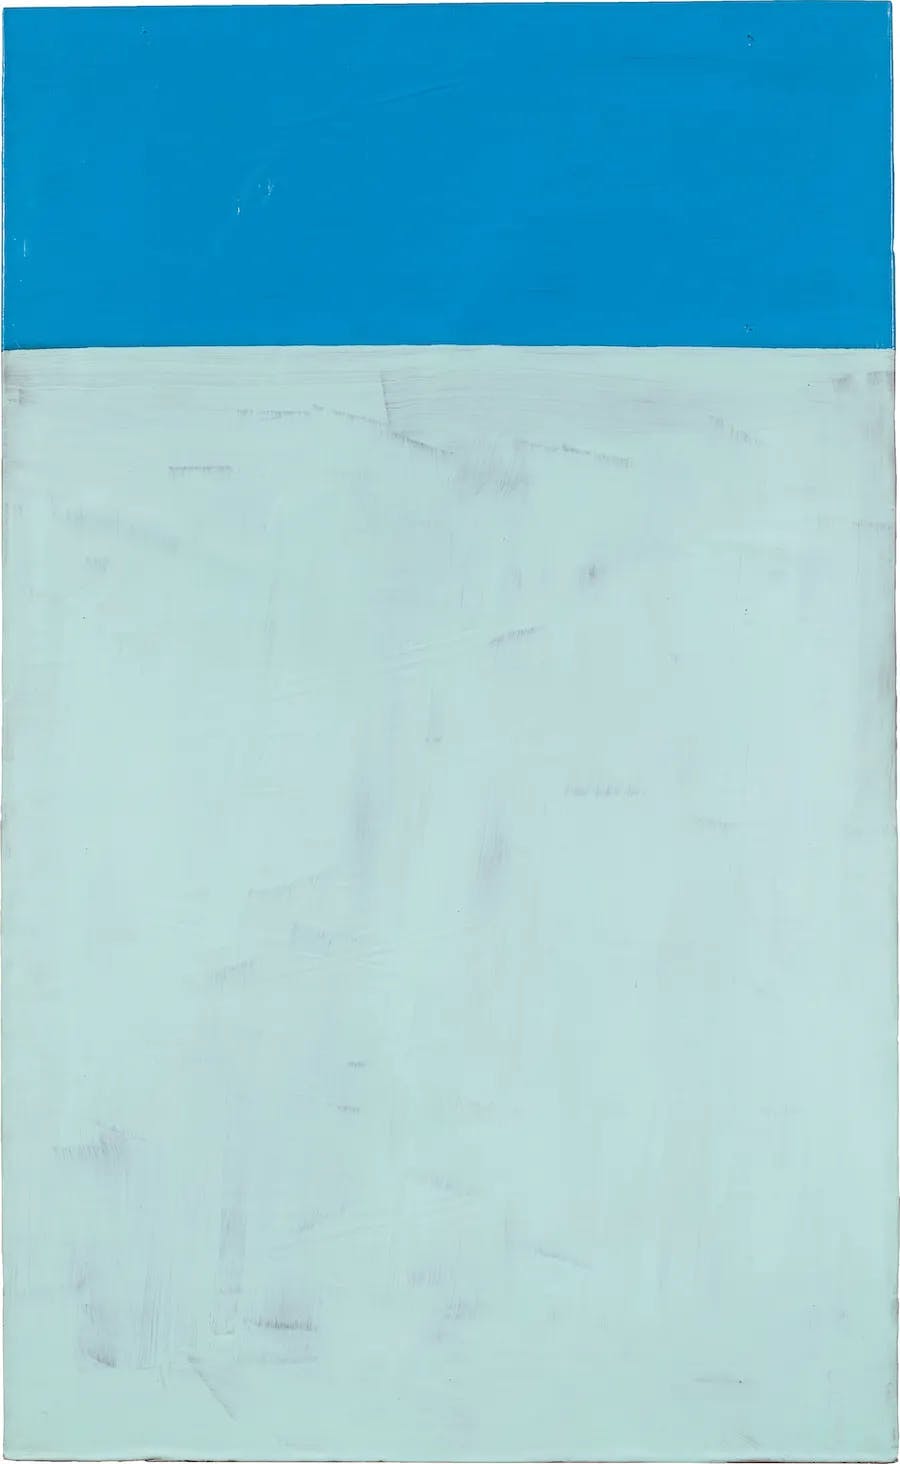 Günther Förg (1952-2013), utan titel, 1990, signerad och daterad, akryl på bly på trä, 180 x 110,5 x 4 cm. Foto © Grisebach